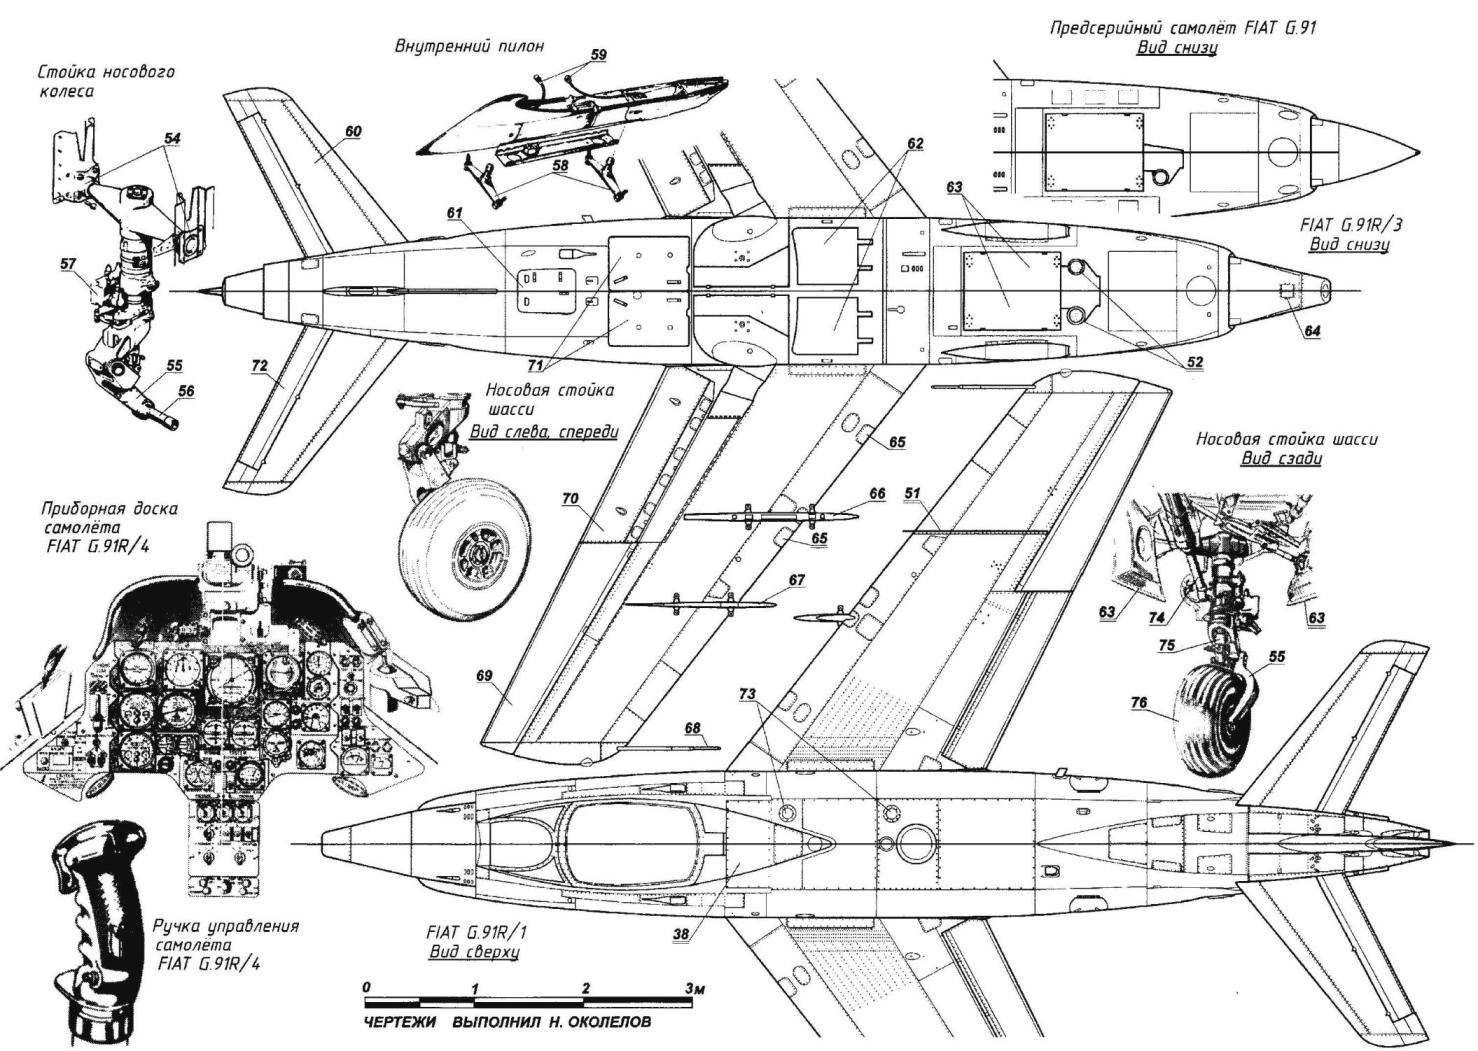 Истребитель-бомбардировщик FIAT G.91